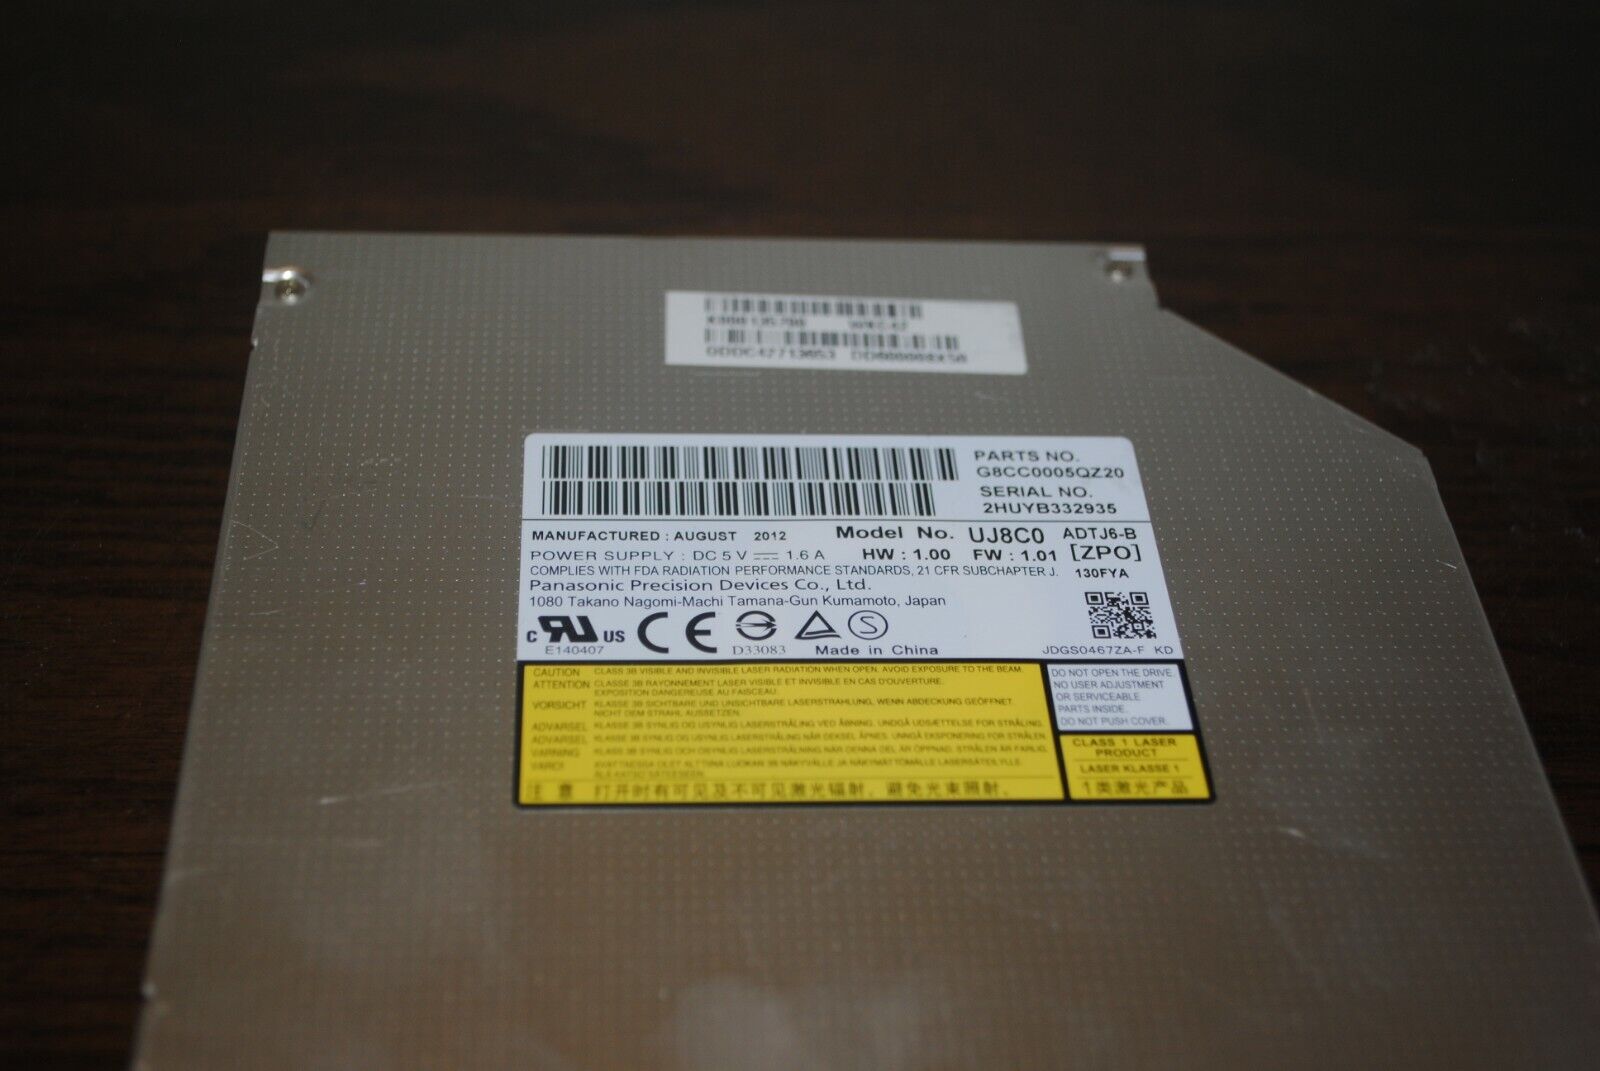 Panasonic Brand DVD Writer Model UJ8CO Dated Aug 2012 5 V 1.6 AMP